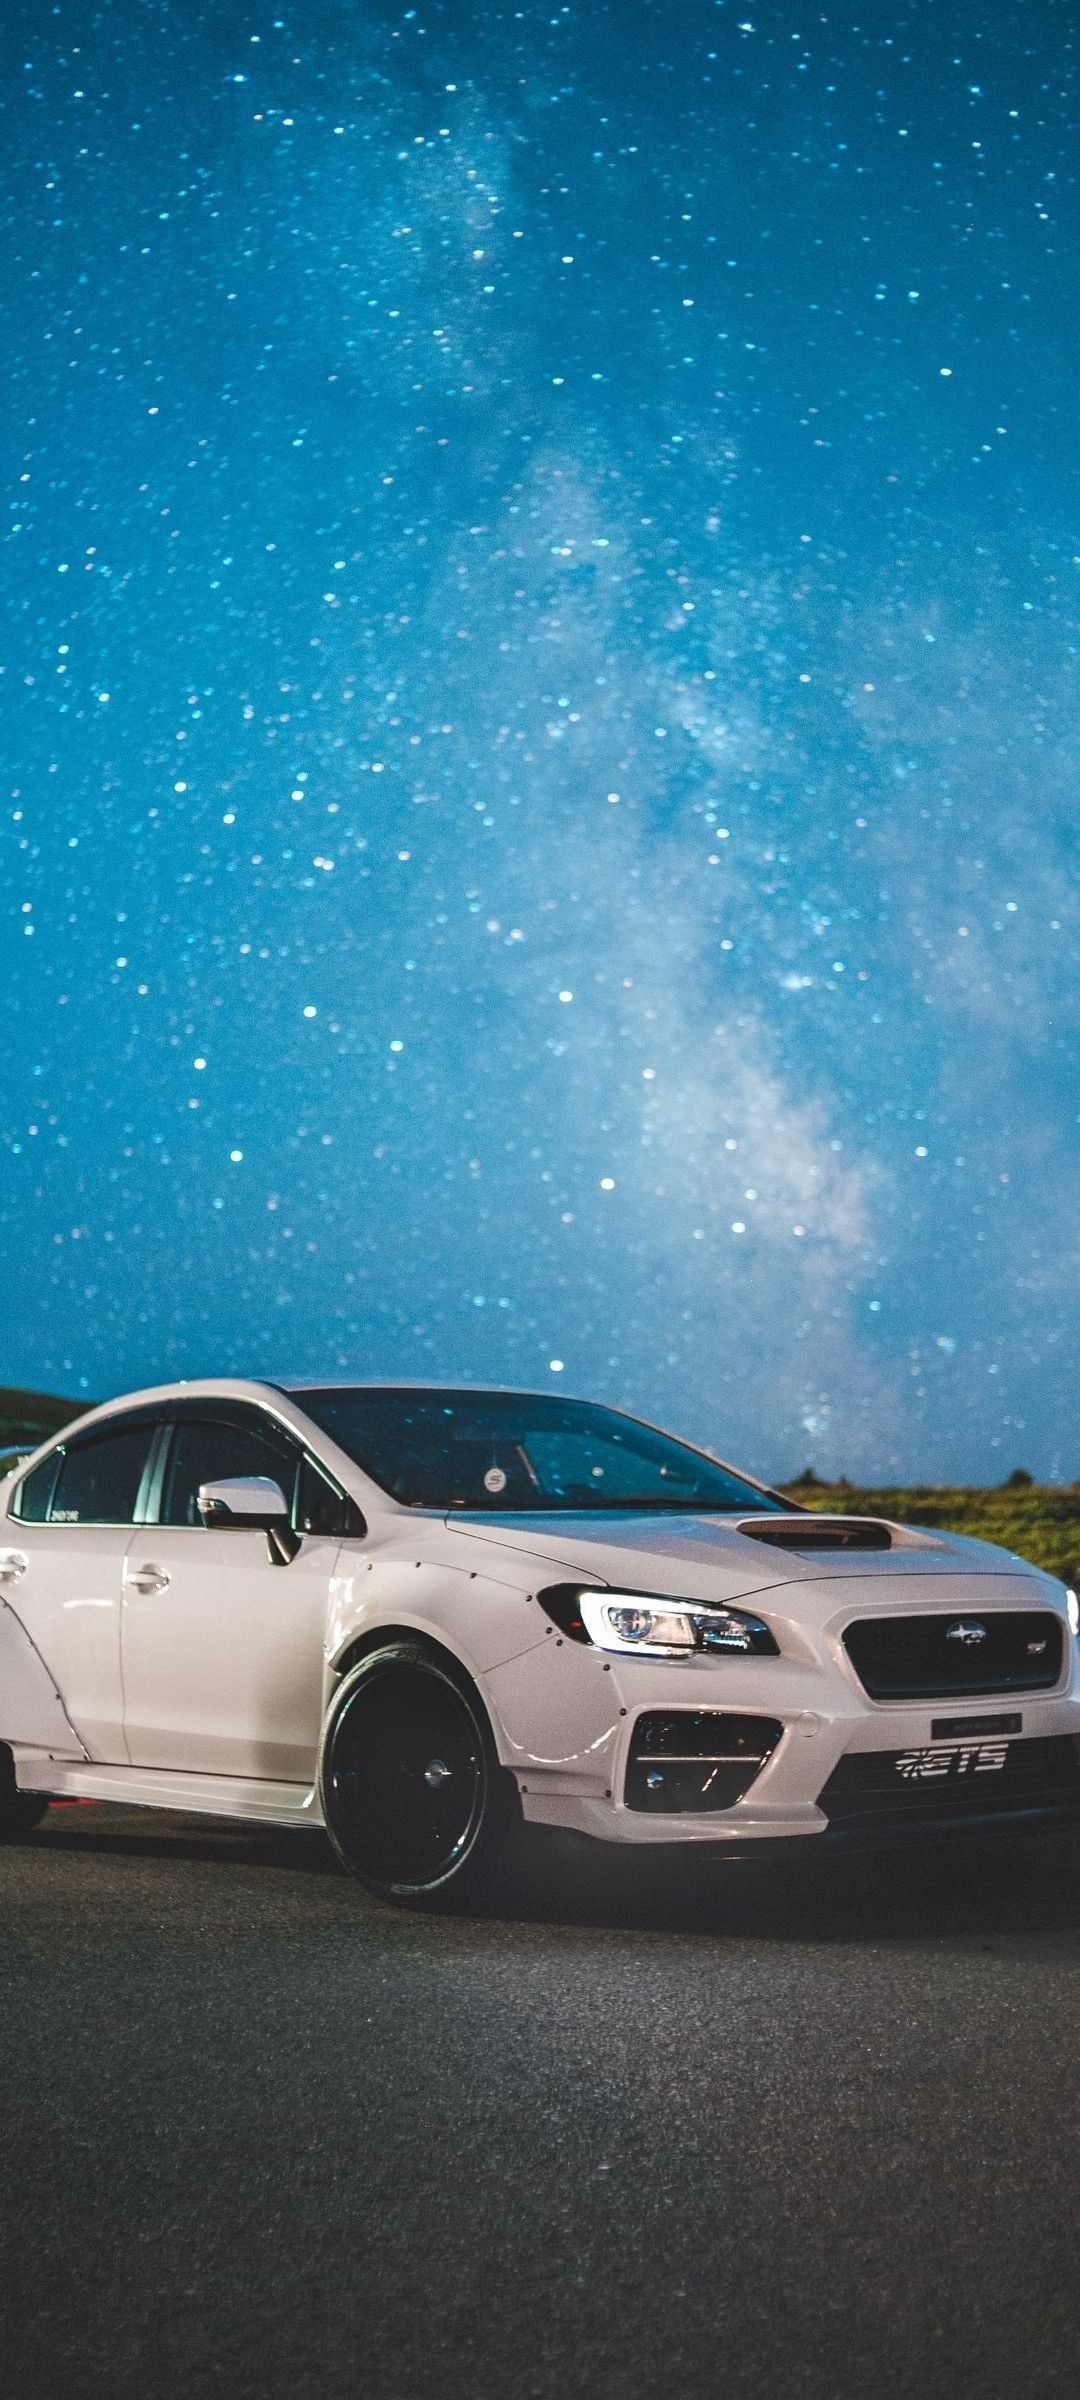 Subaru, Micah Bergstrom's cars, Car iPhone wallpaper, Car expertise, 1080x2400 HD Phone